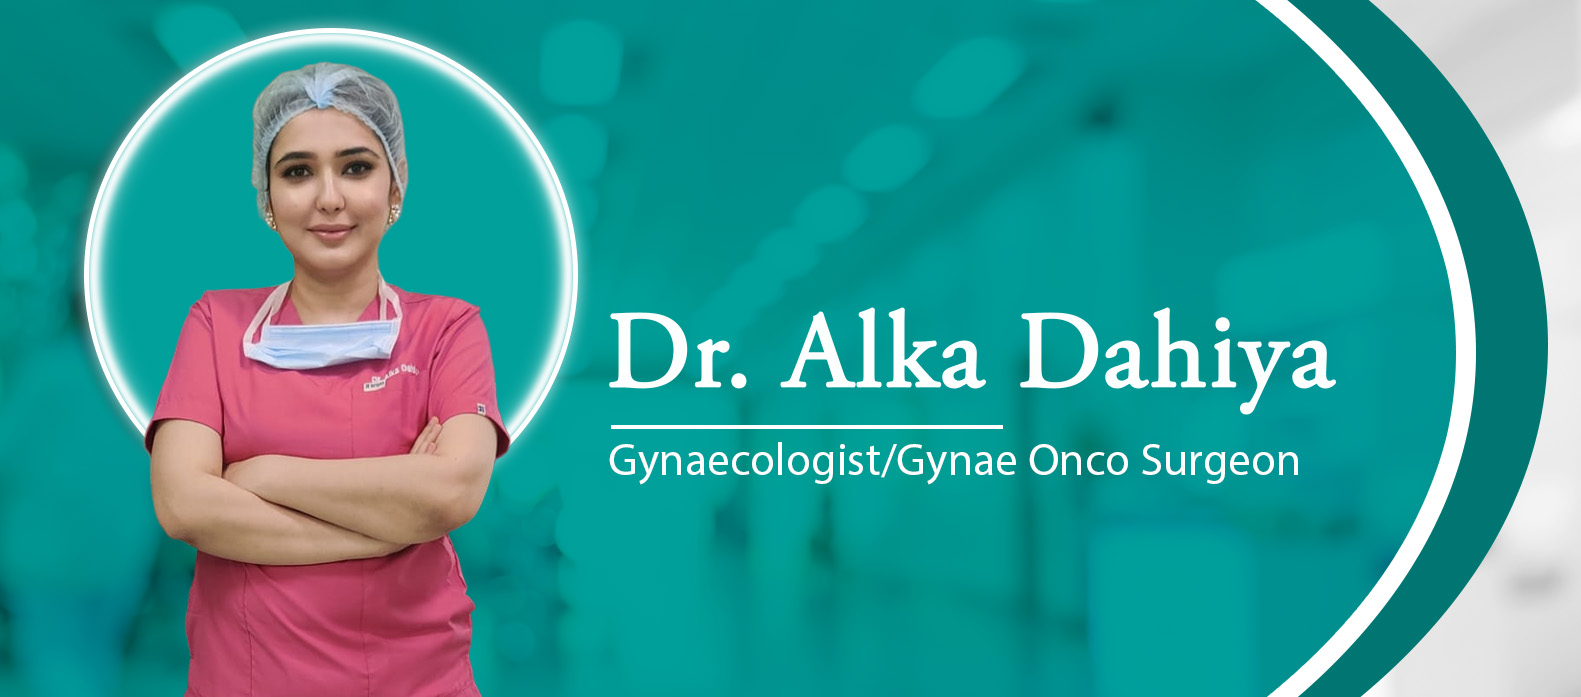 Dr. Alka Dahiya